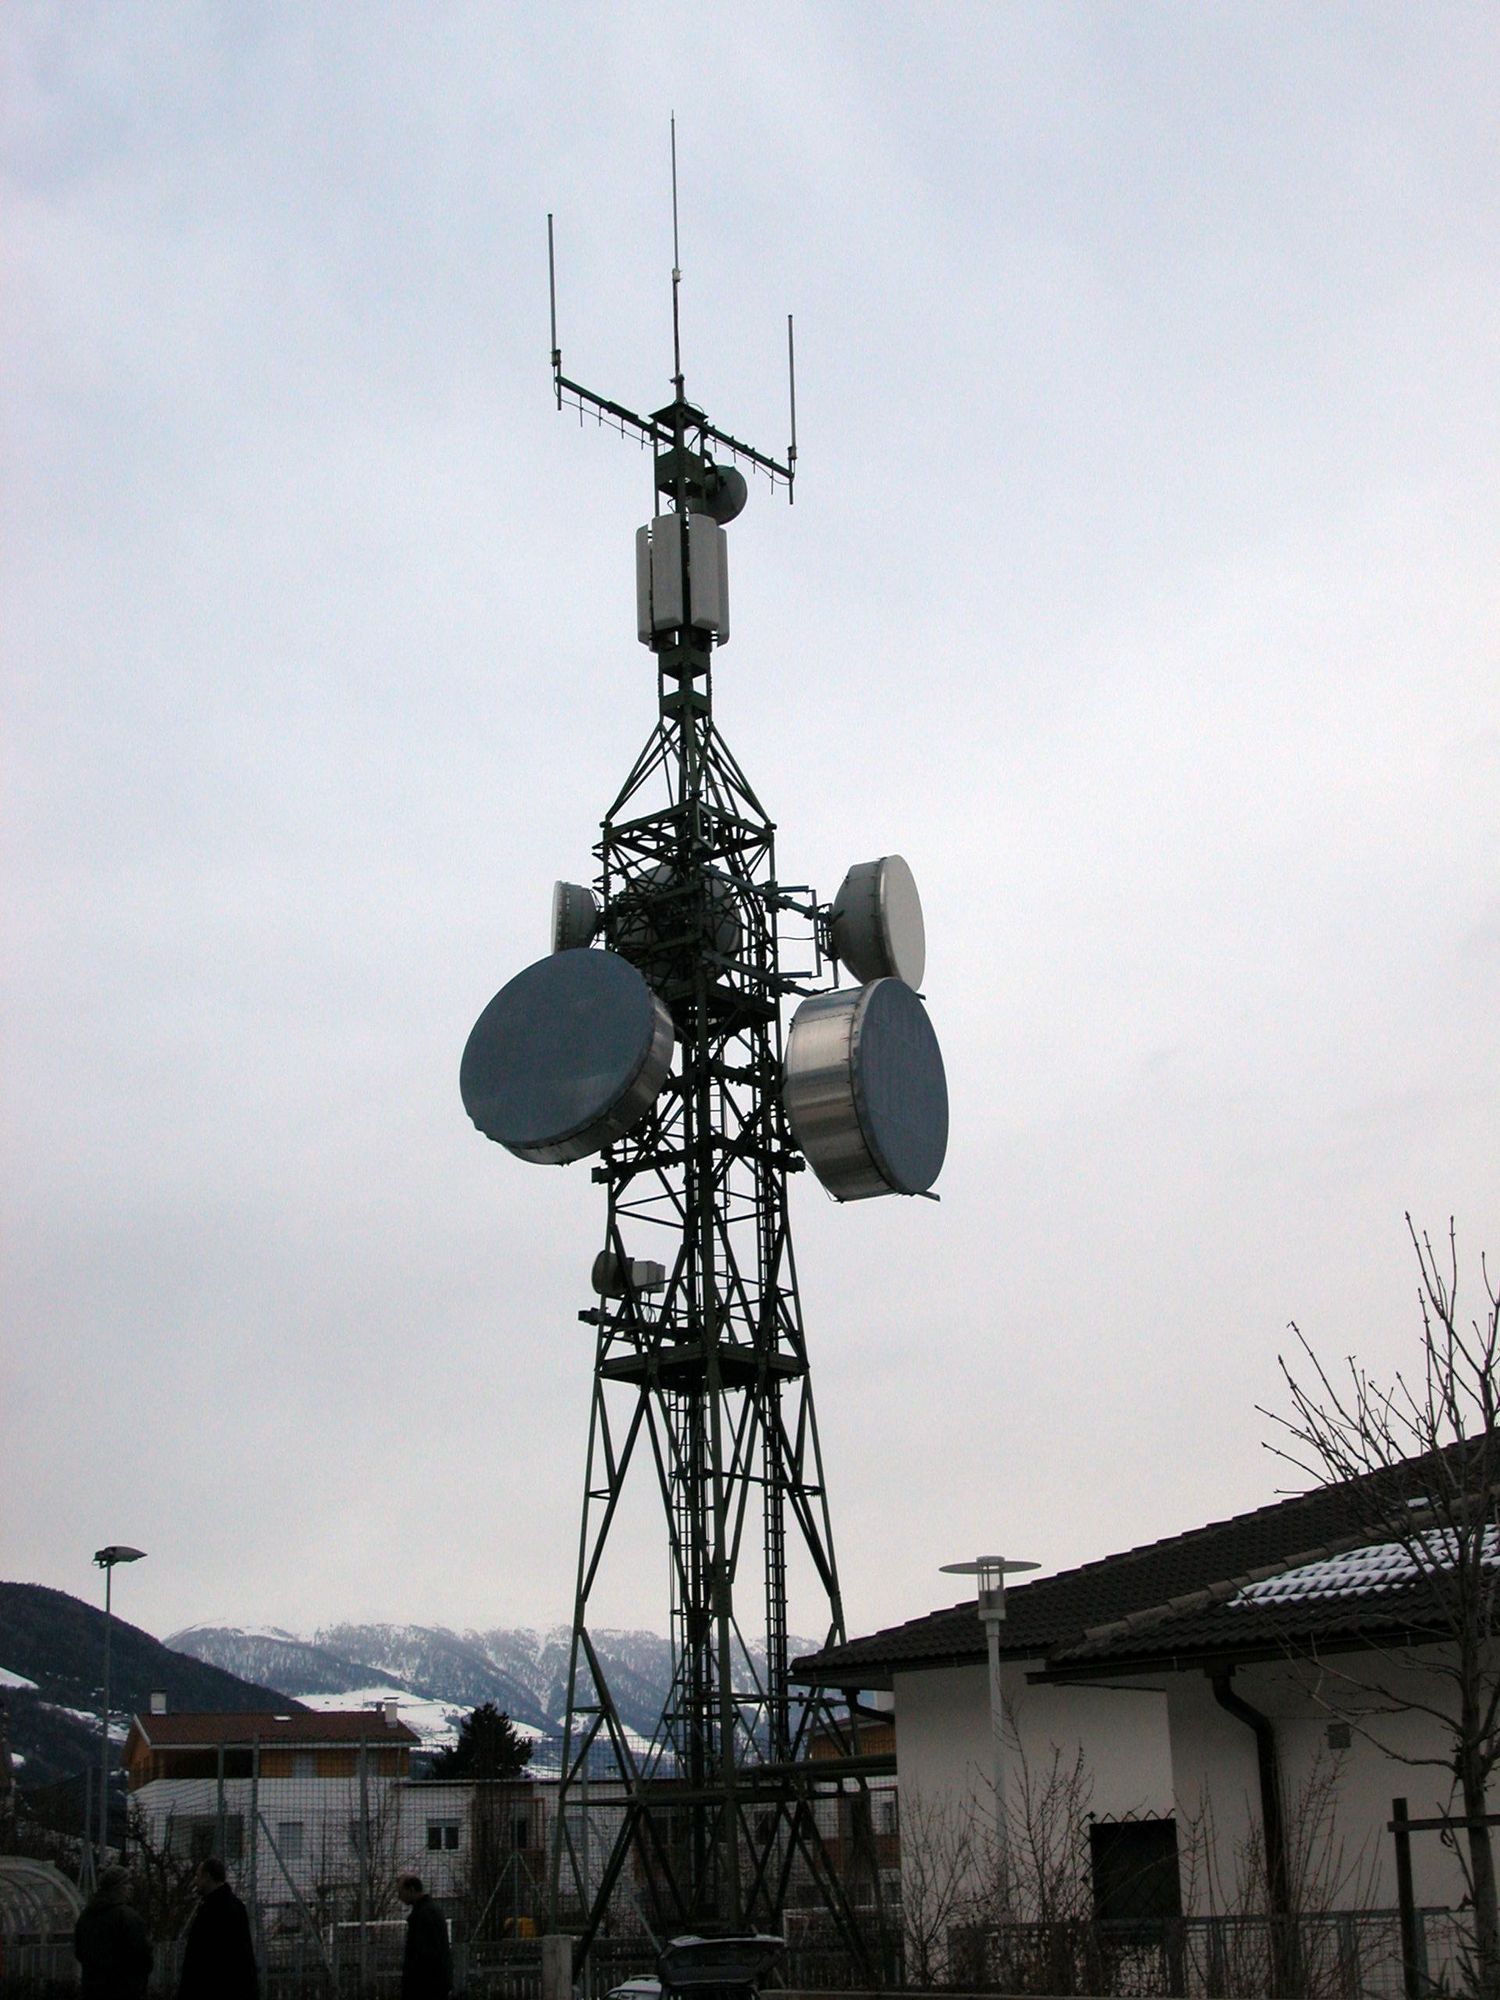 Die Antennen von Vodafone auf dem Masten der Telecom. Nicht mehr in Betrieb seit Sommer 2007